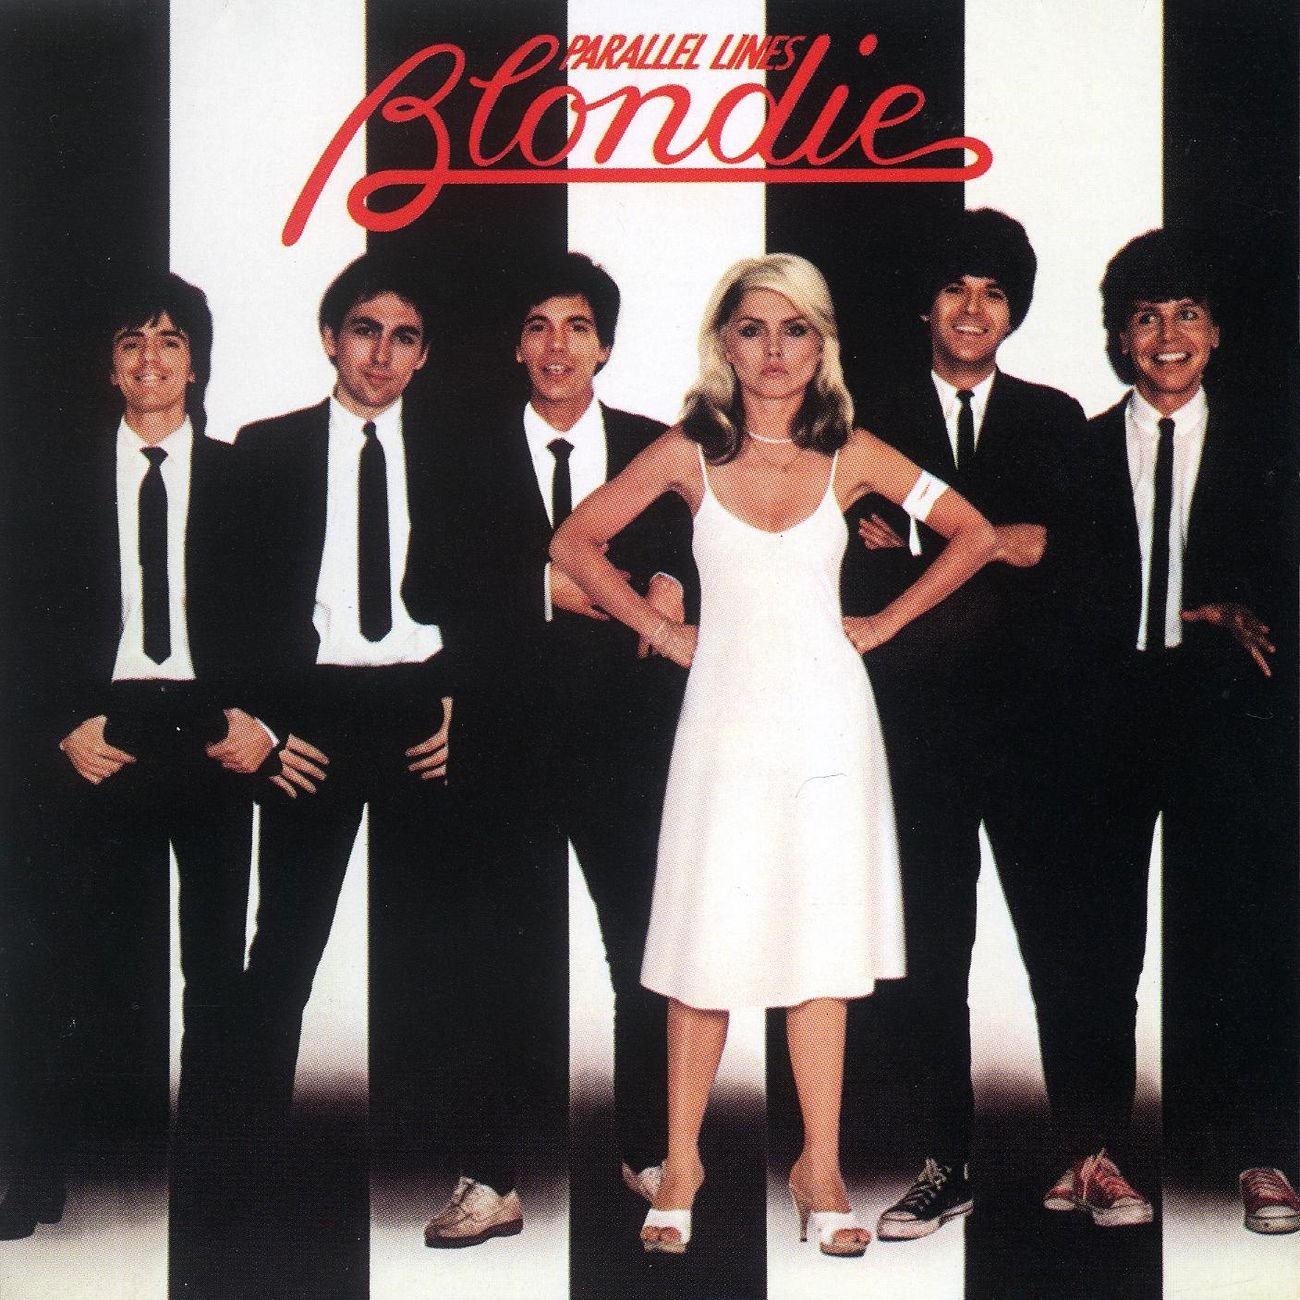 Blondie - Parallel Lines (Album Cover)